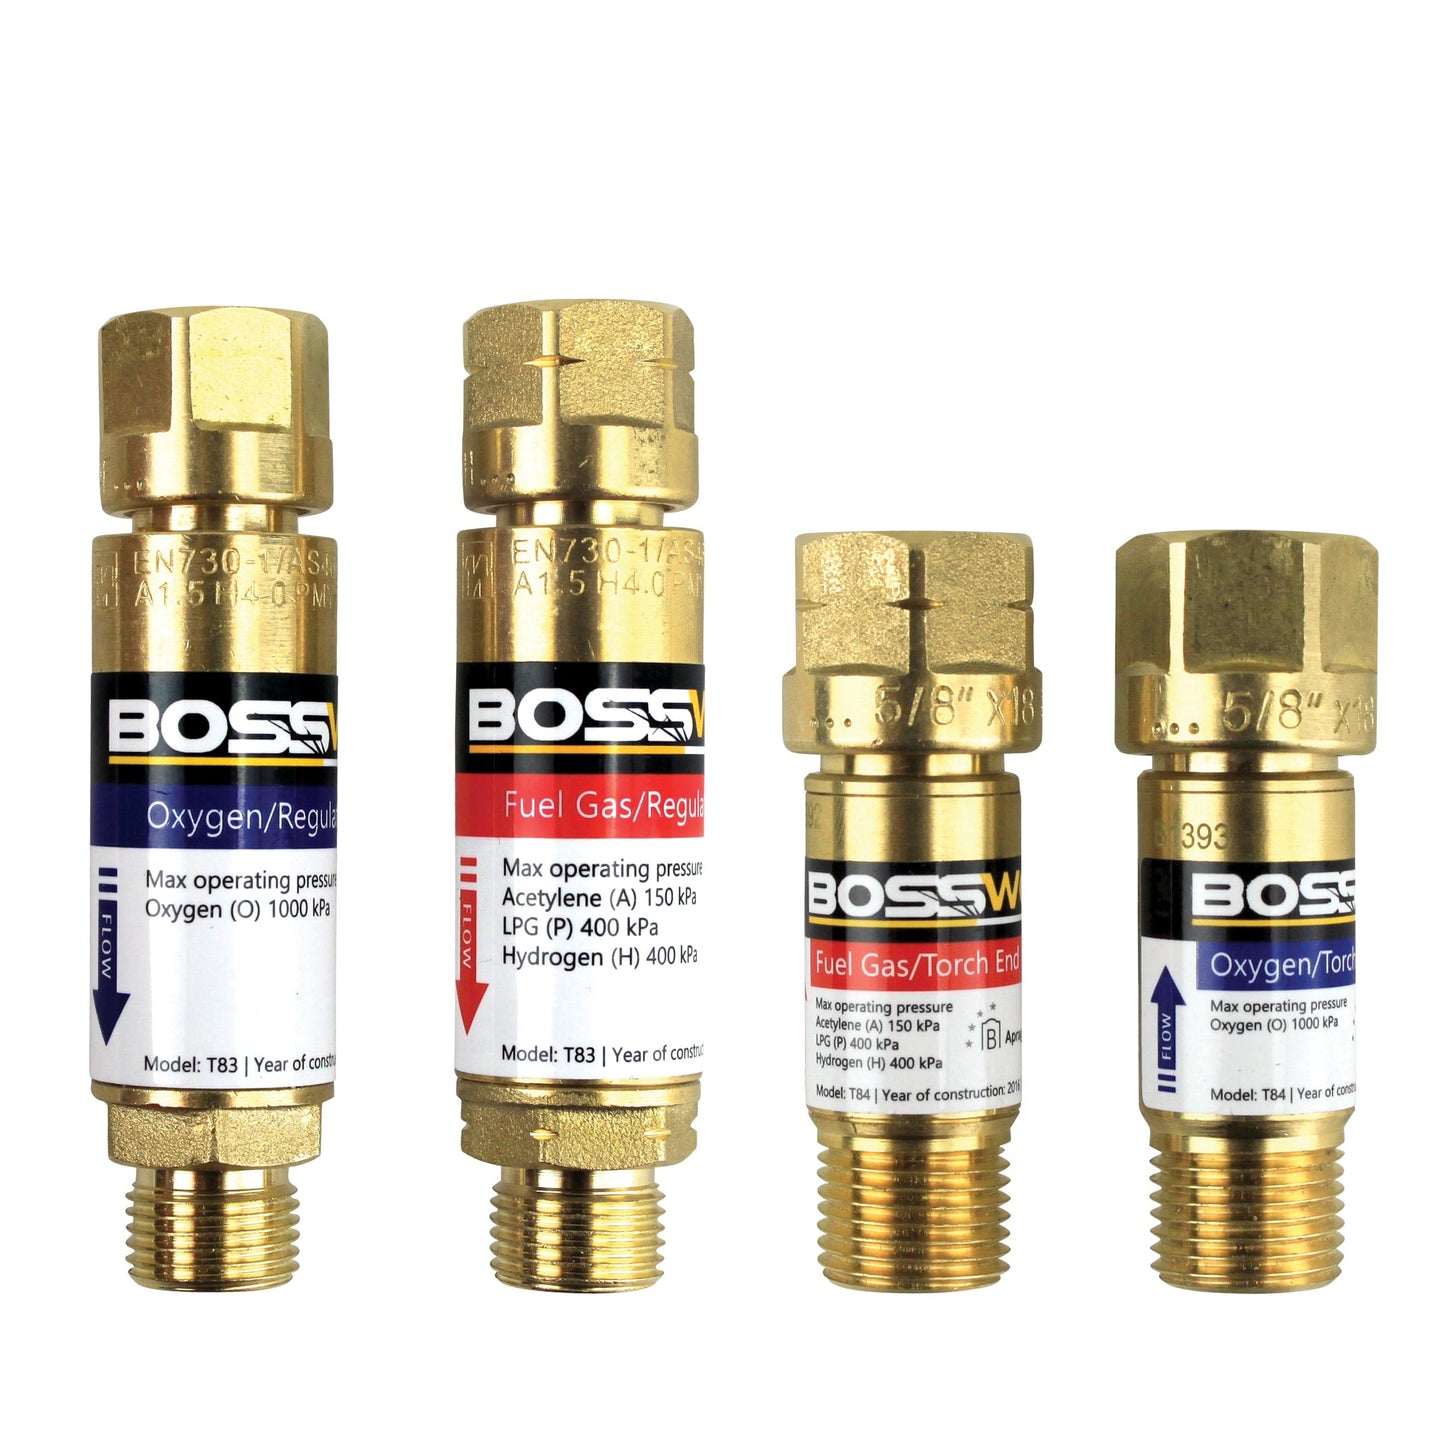 BOSSWELD Oxygen/Acetylene Gas Kit